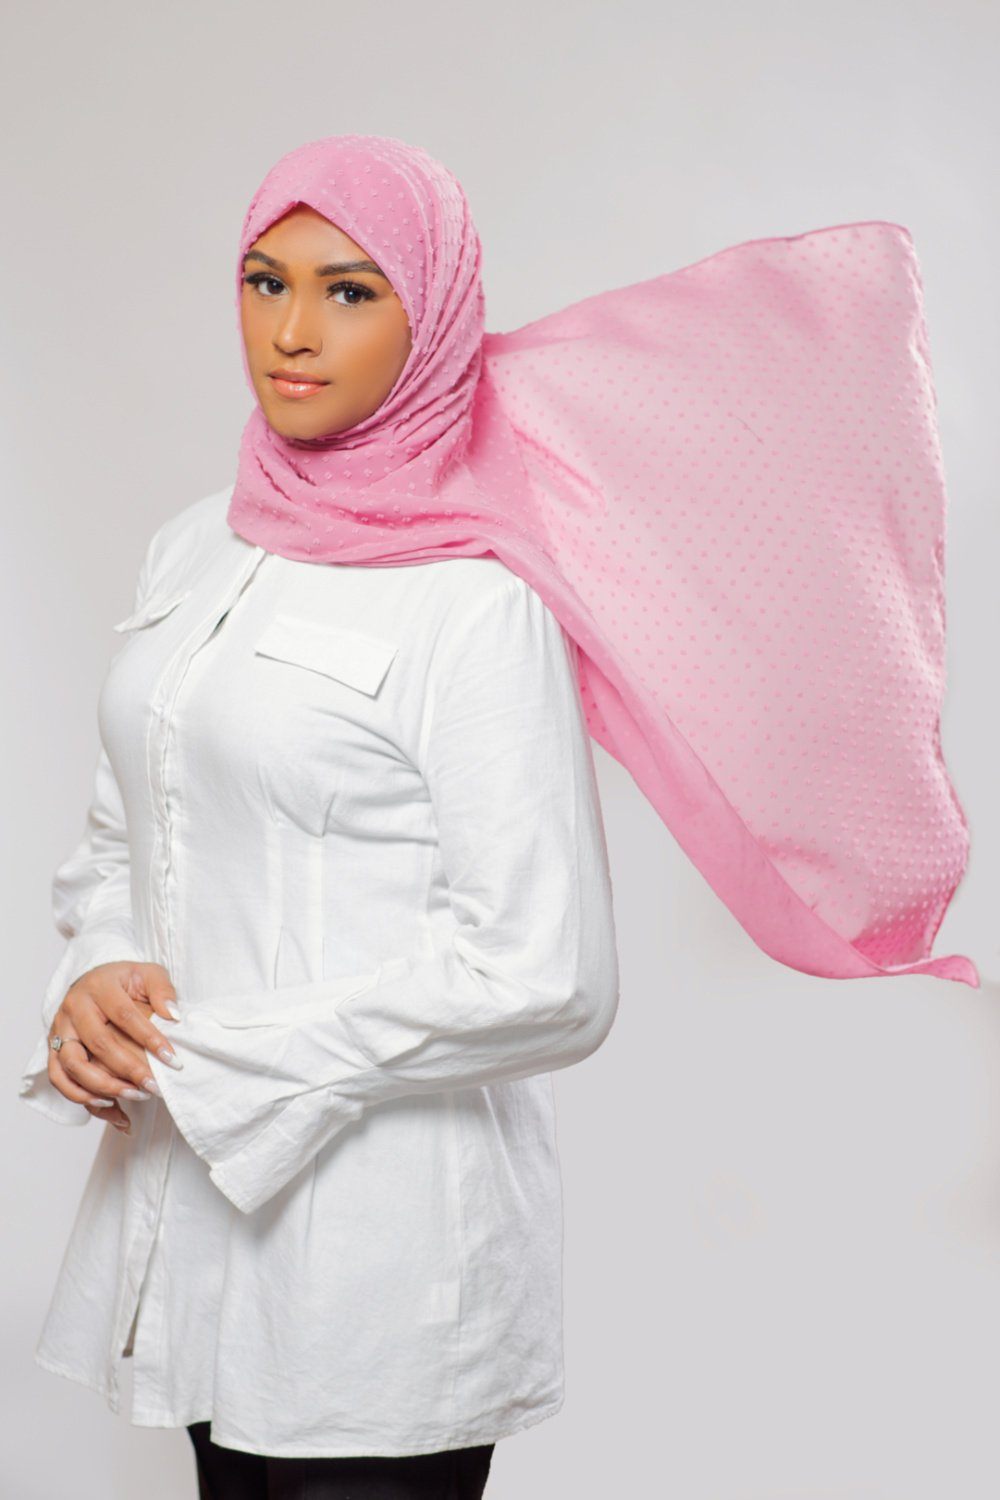 Mosaic Butti Chiffon | Pink Hijab Dana Fashion 